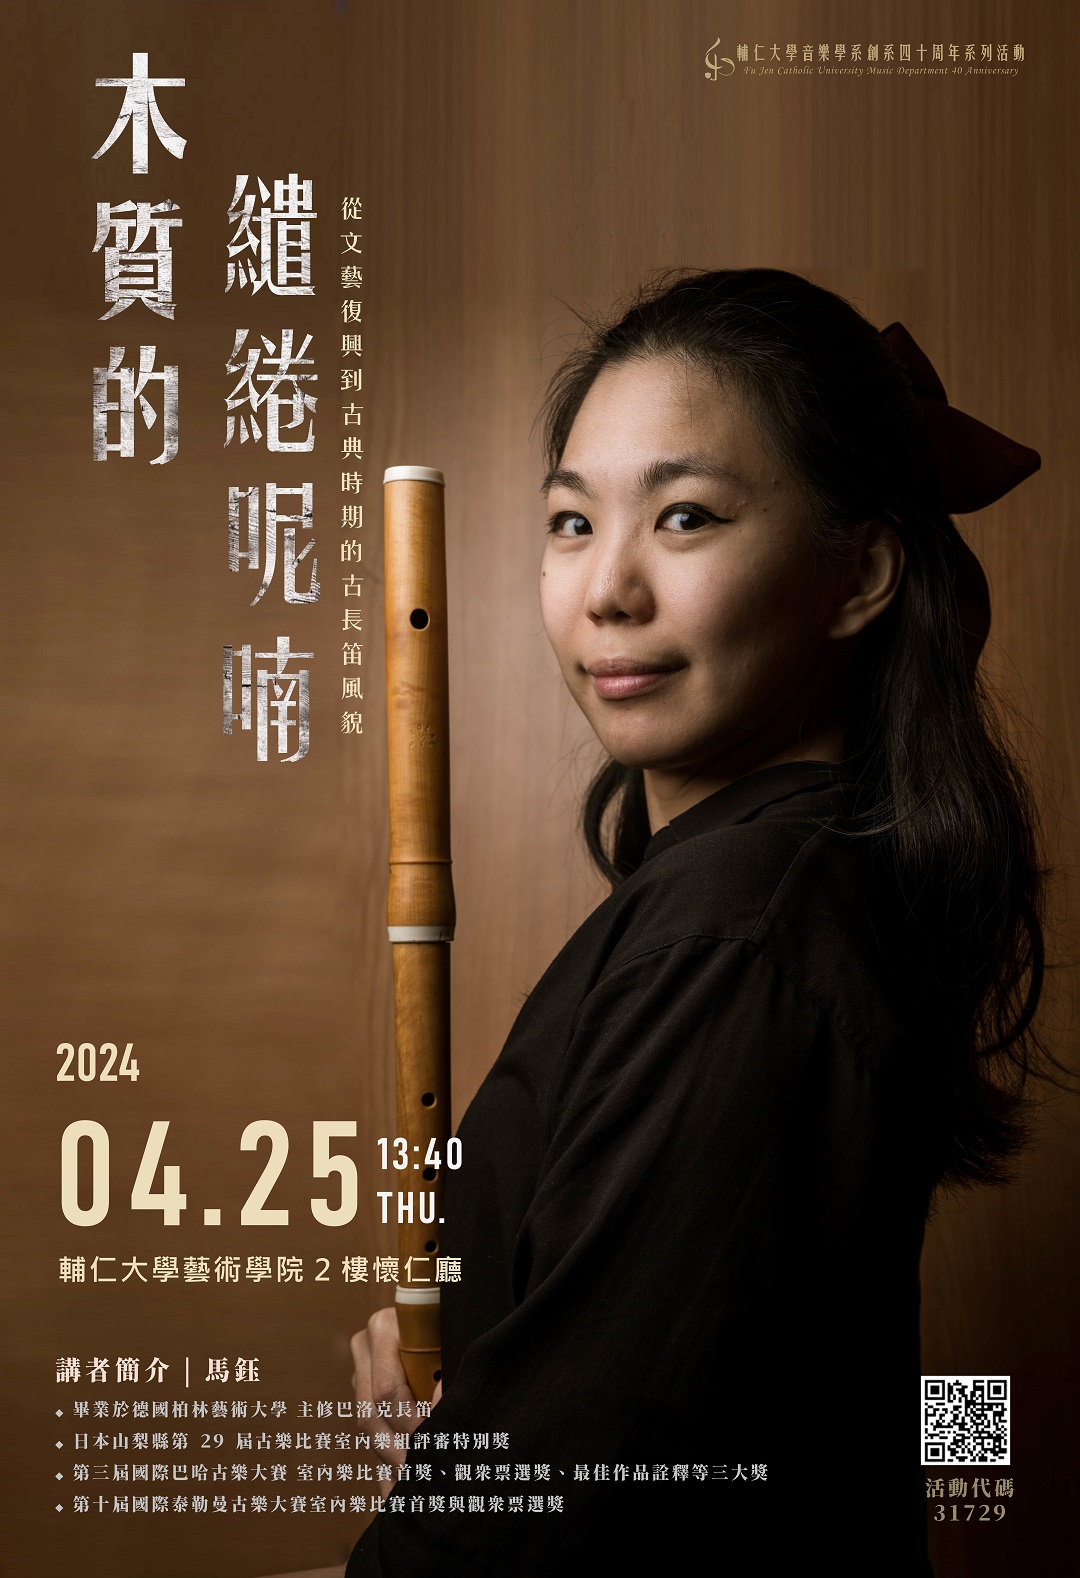 《活動》2024.4.25 古長笛演奏家馬鈺專題講座「木質的繾綣呢喃－從文藝復興到古典時期的古長笛風貌」